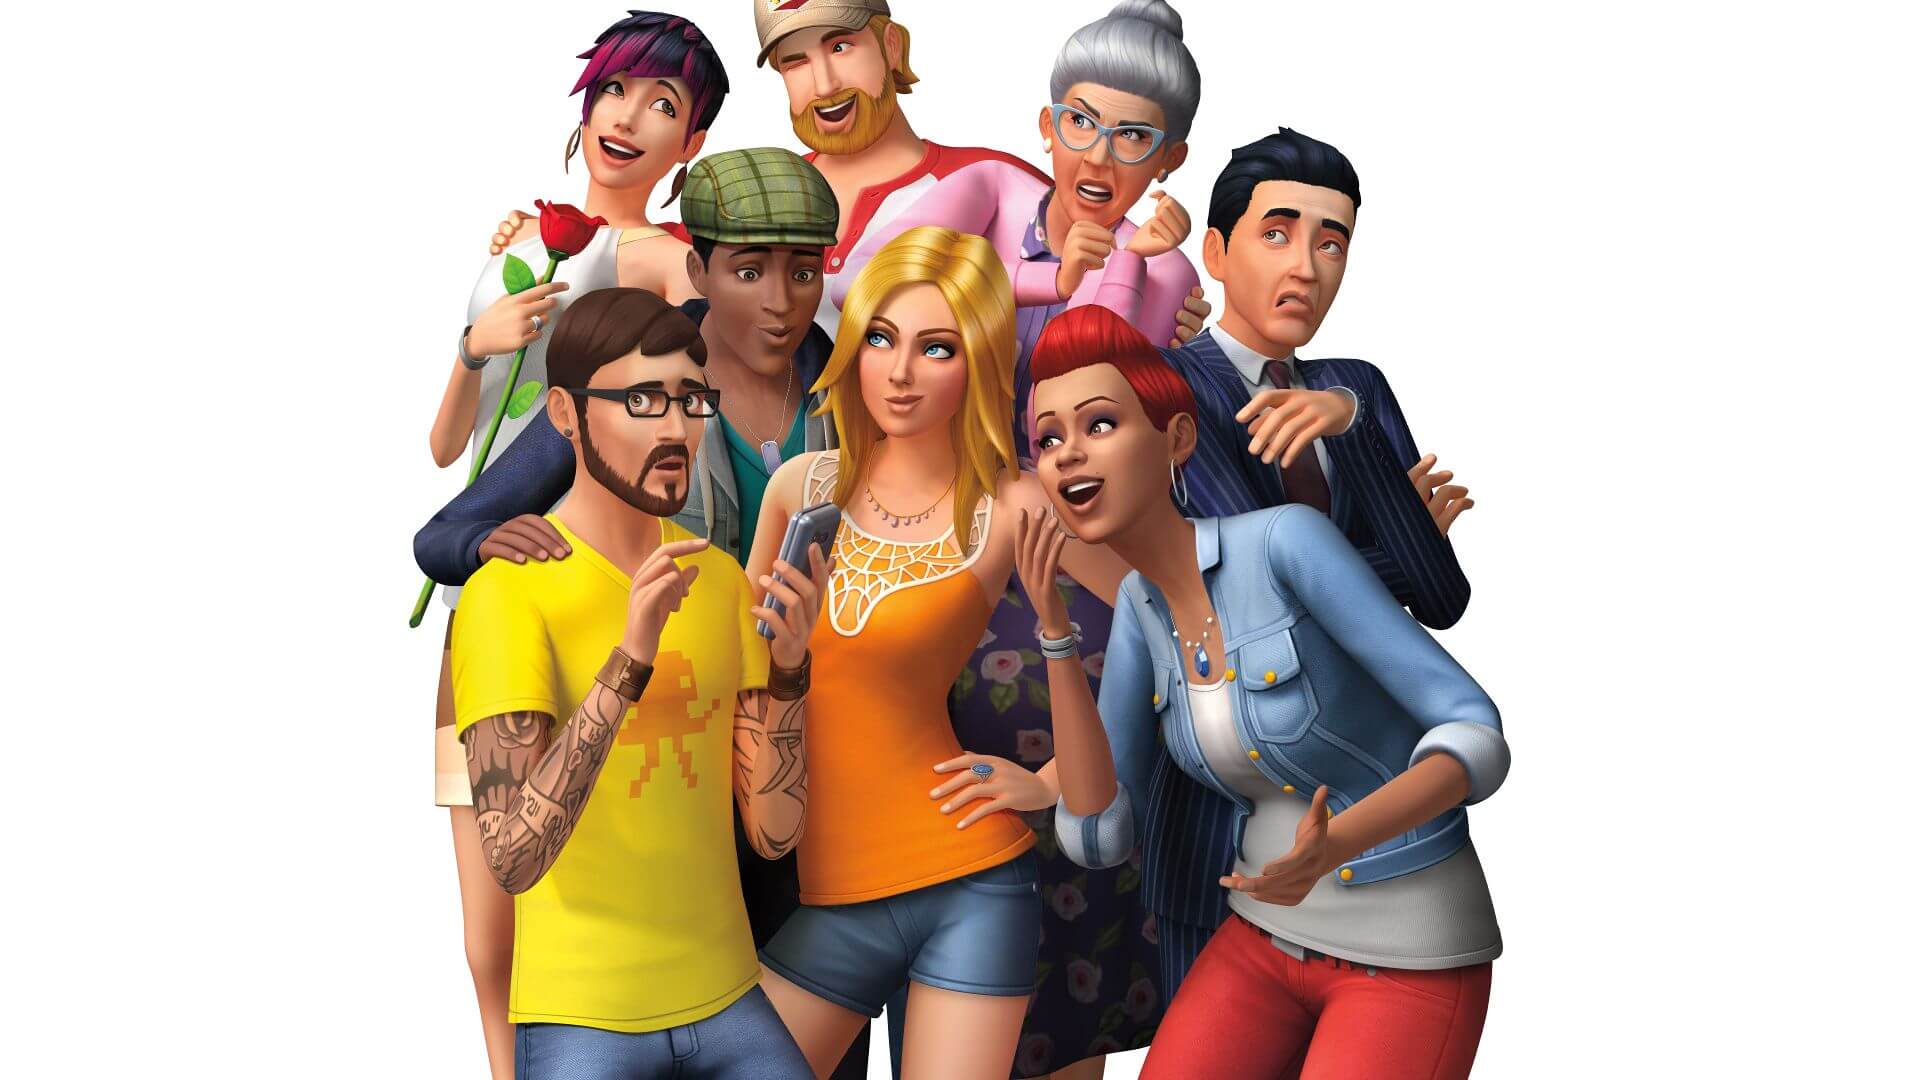 Игра The Sims 4 выйдет на Android и iOS